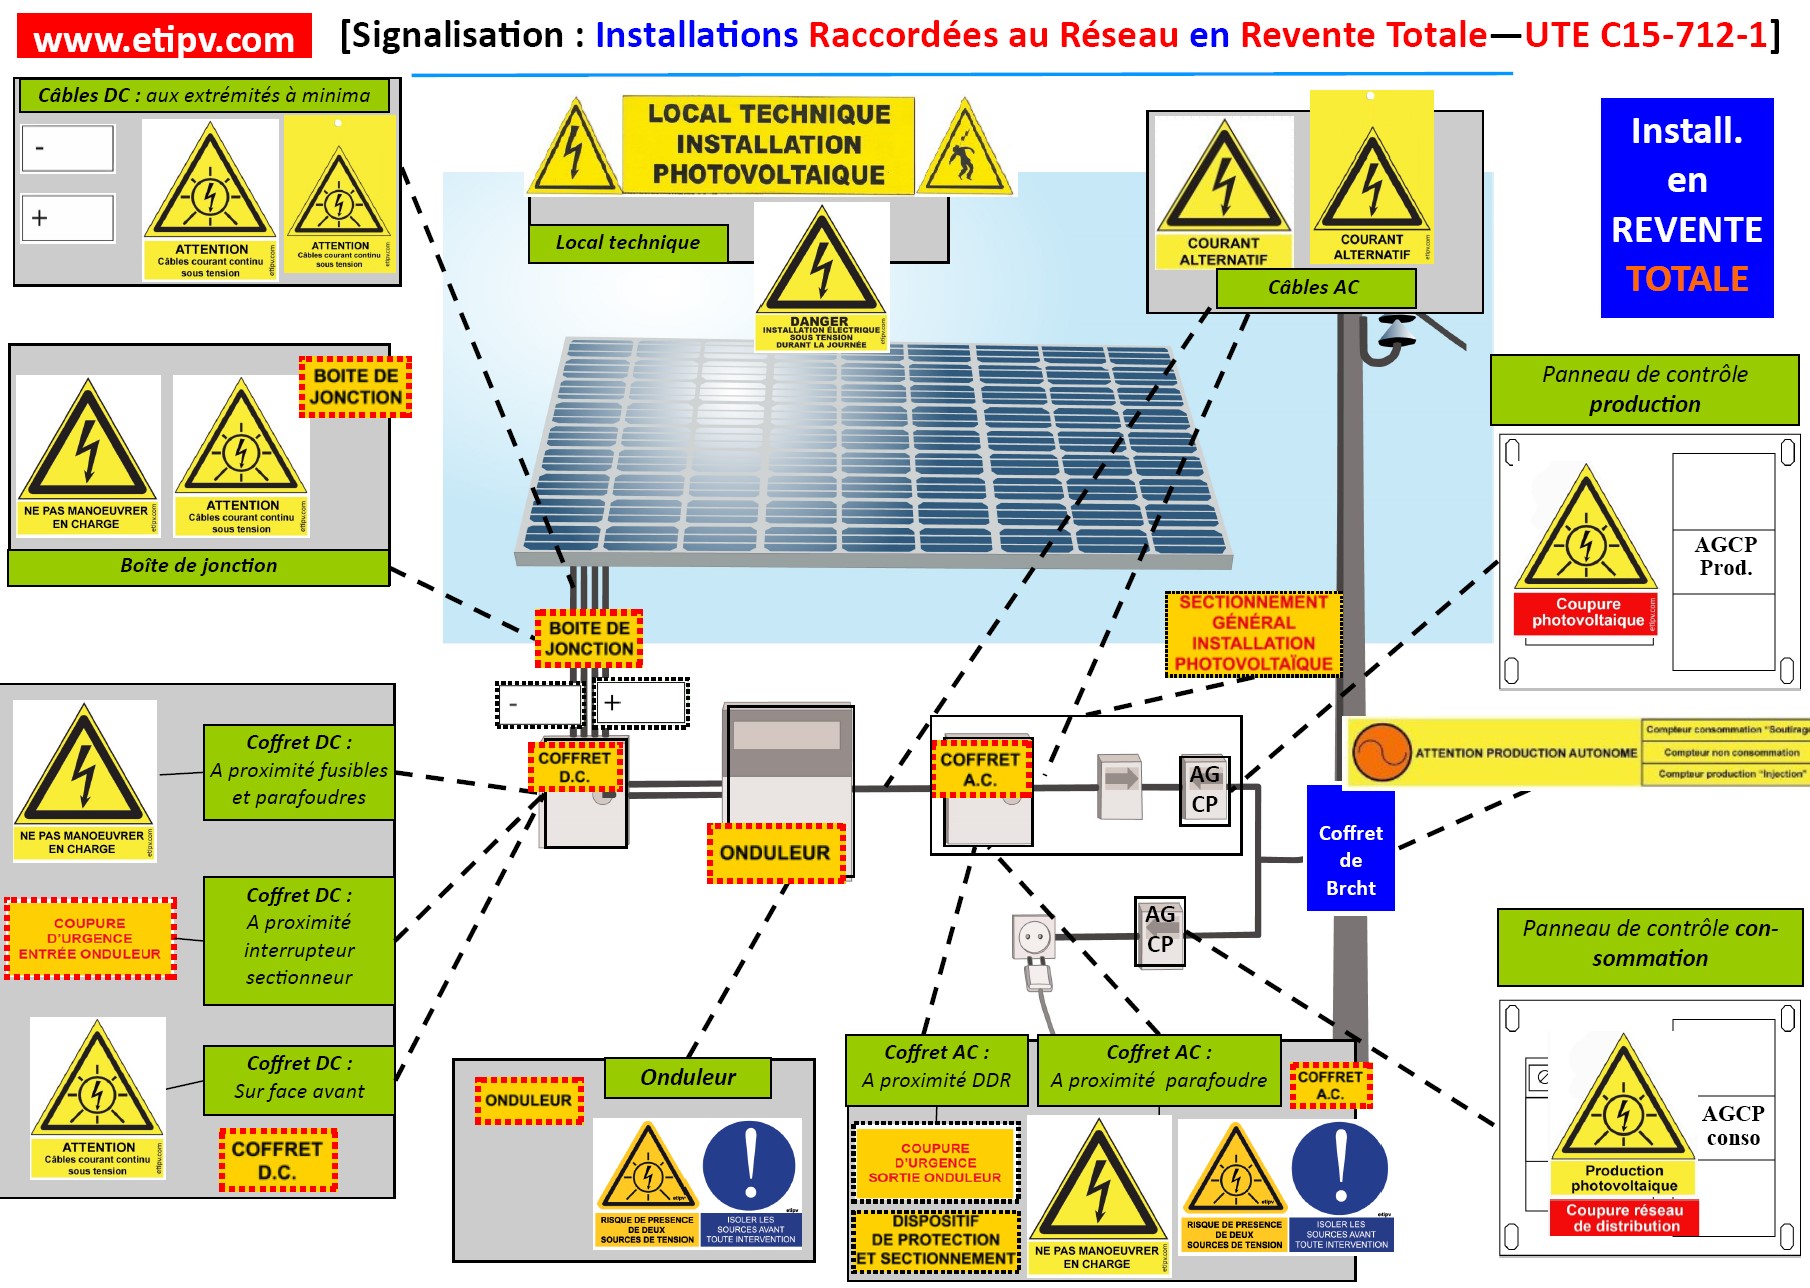 Schéma d'implantation des étiquettes photovoltaïques